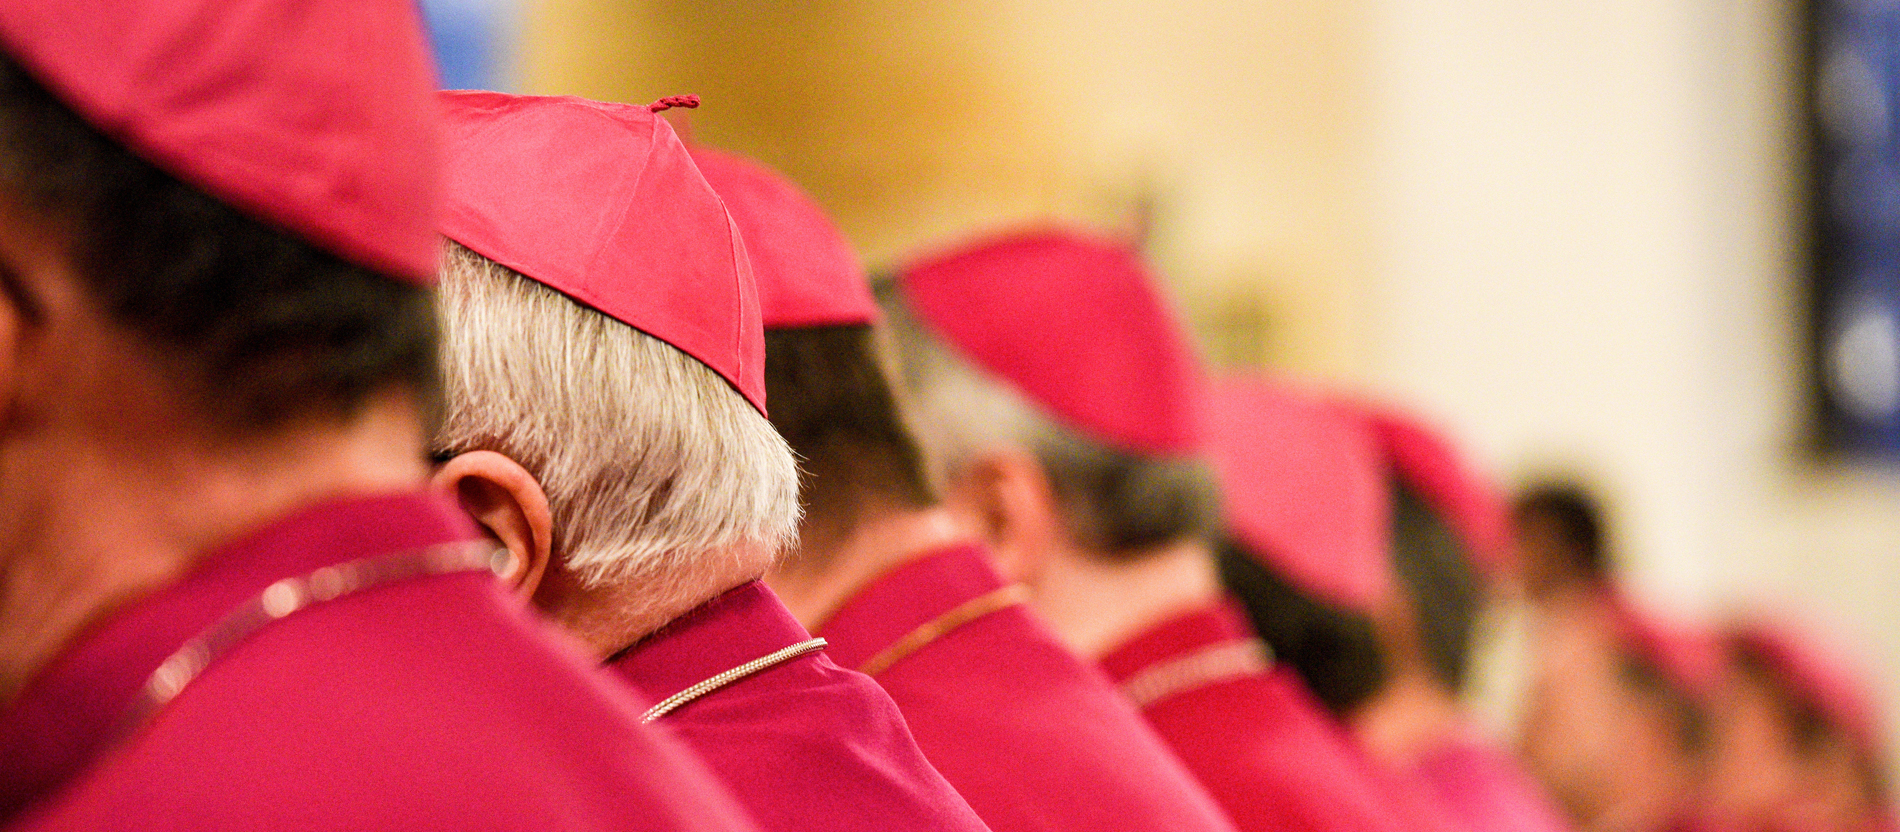 Nuncij: Biskupi u SAD-u trebaju napustiti svoje zone komfora